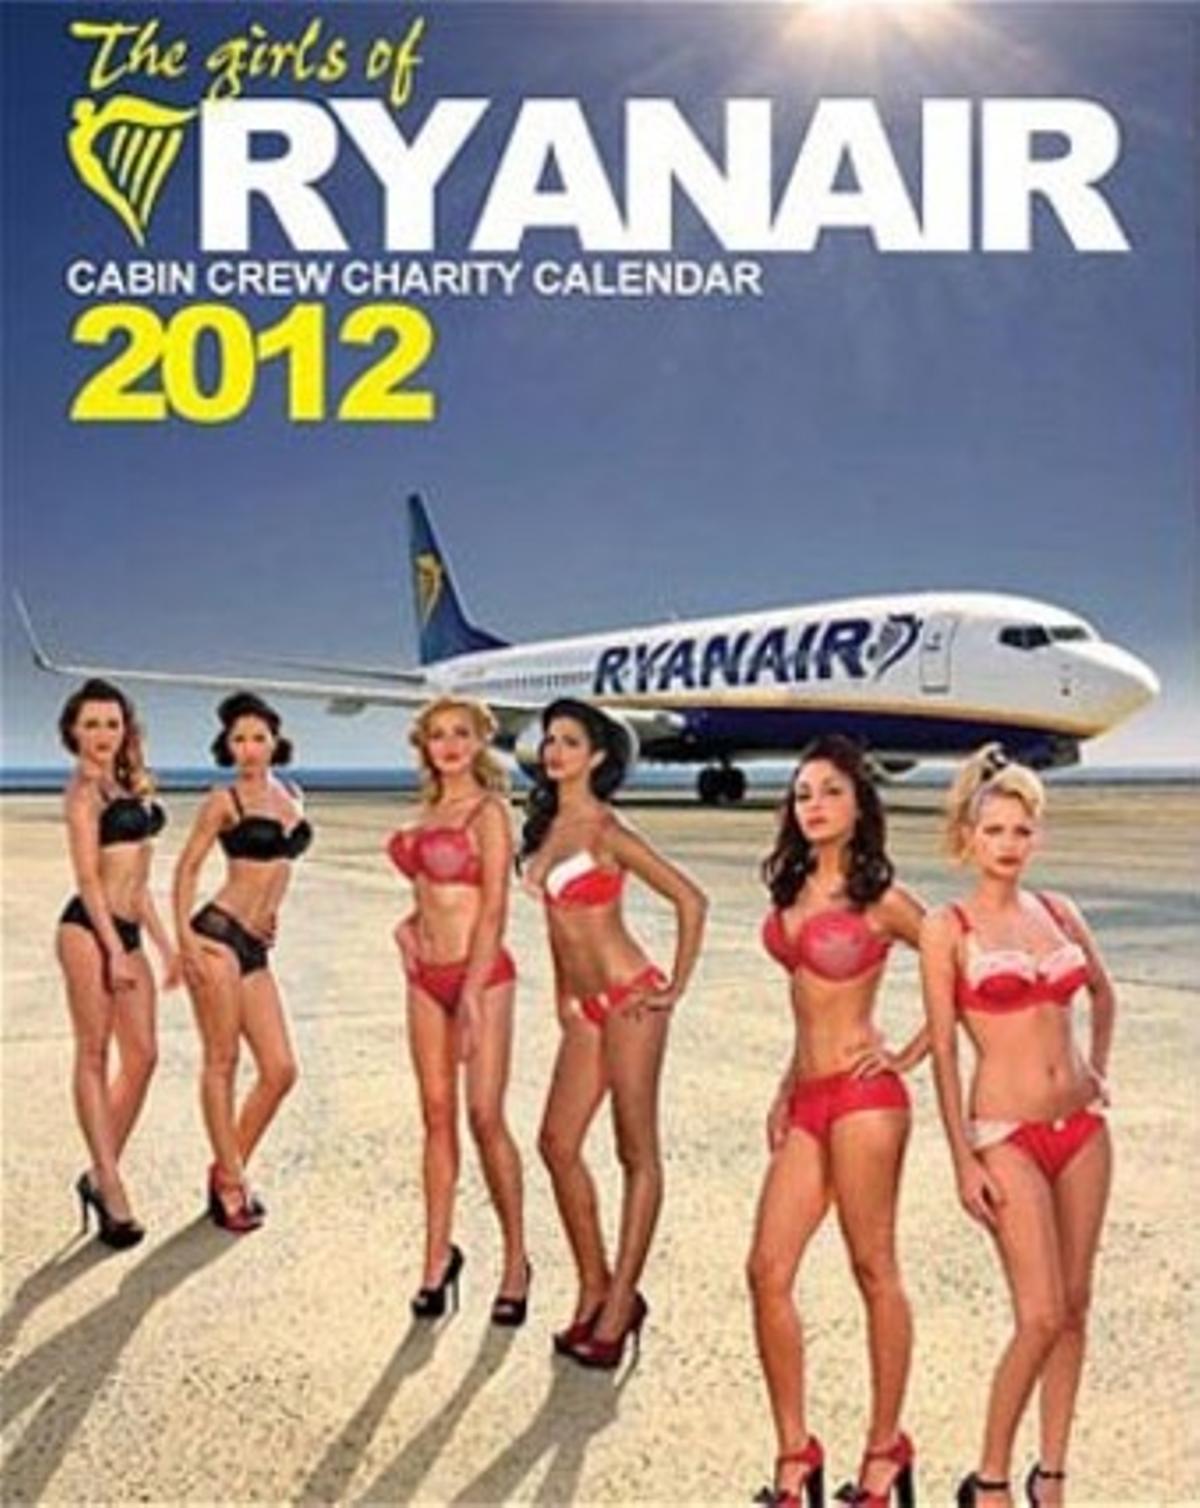 Calendario de la tripulación de cabina de la aerolínea Ryanair.